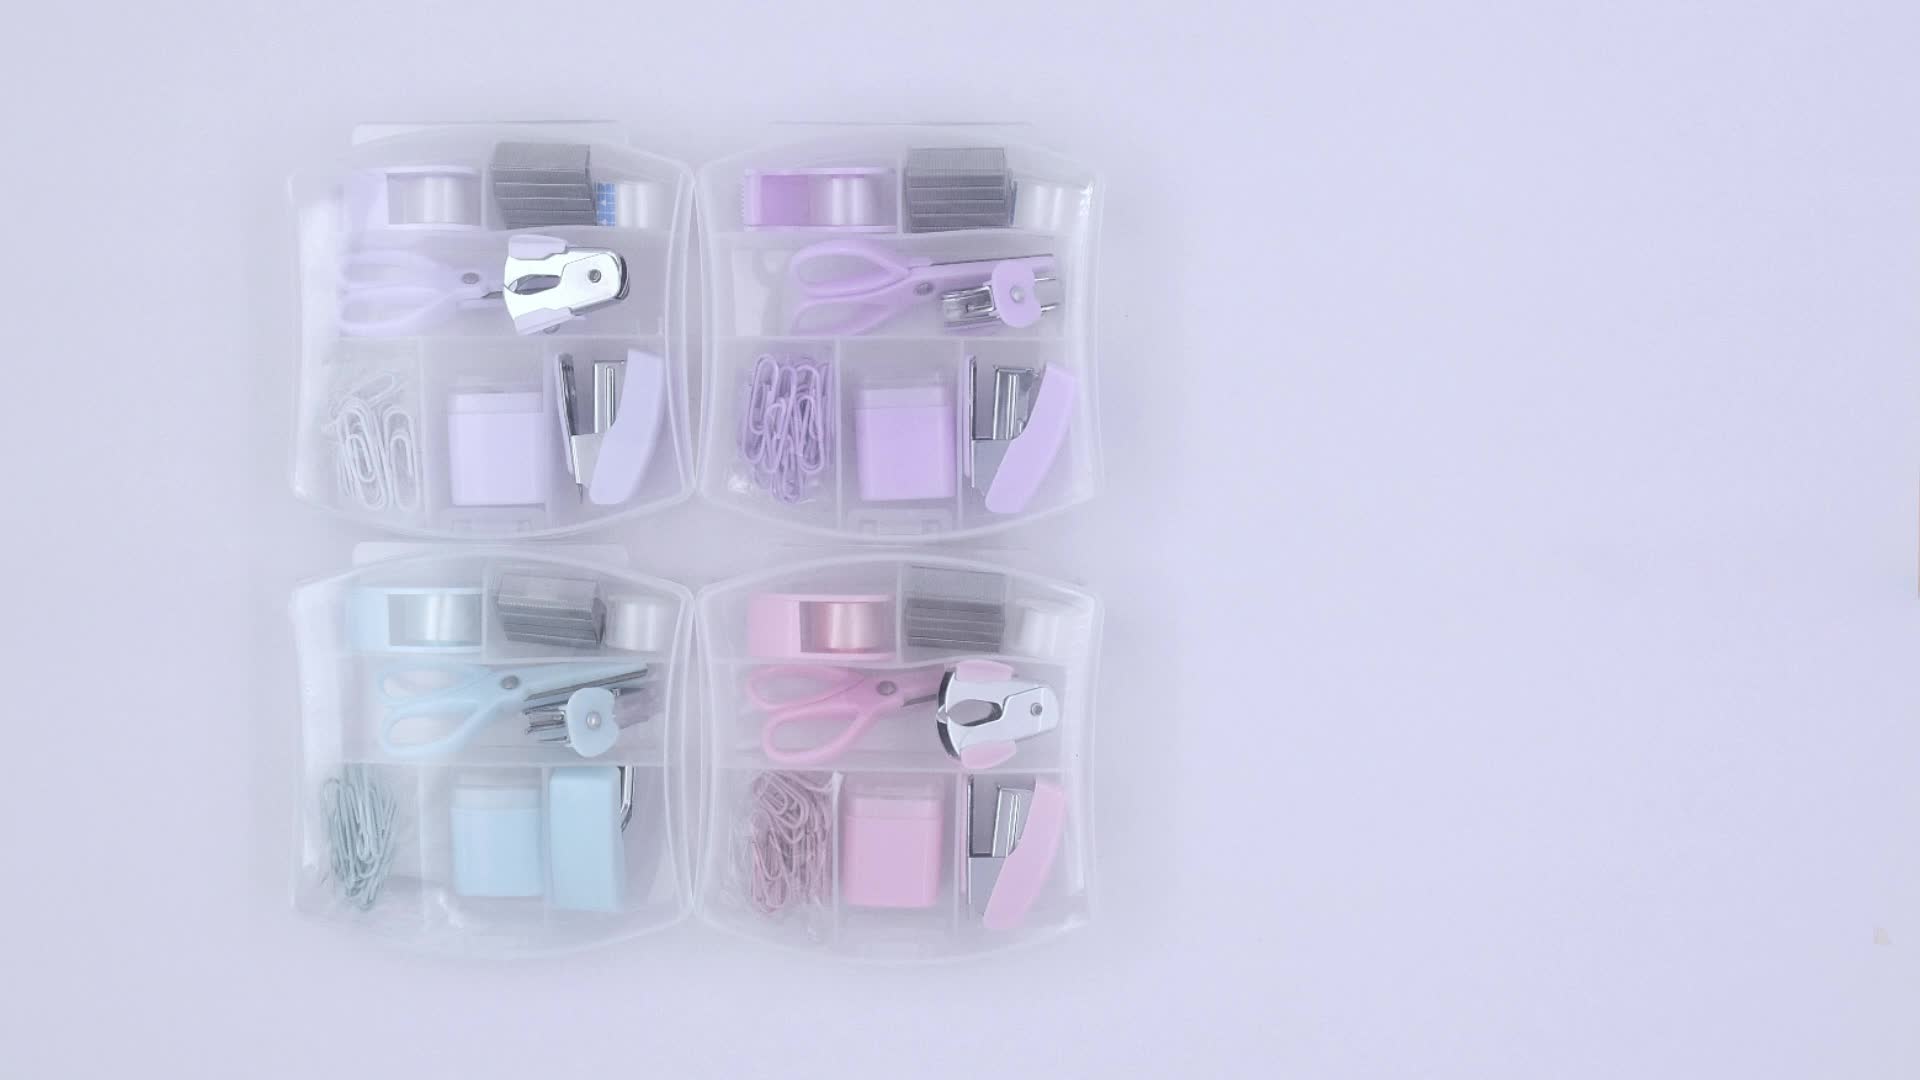 LD Blue Mini Office Supply Kit Portable Case with Scissors, Paper Clips, Tape Dispenser, Pencilener, Stapler & Staple Remover